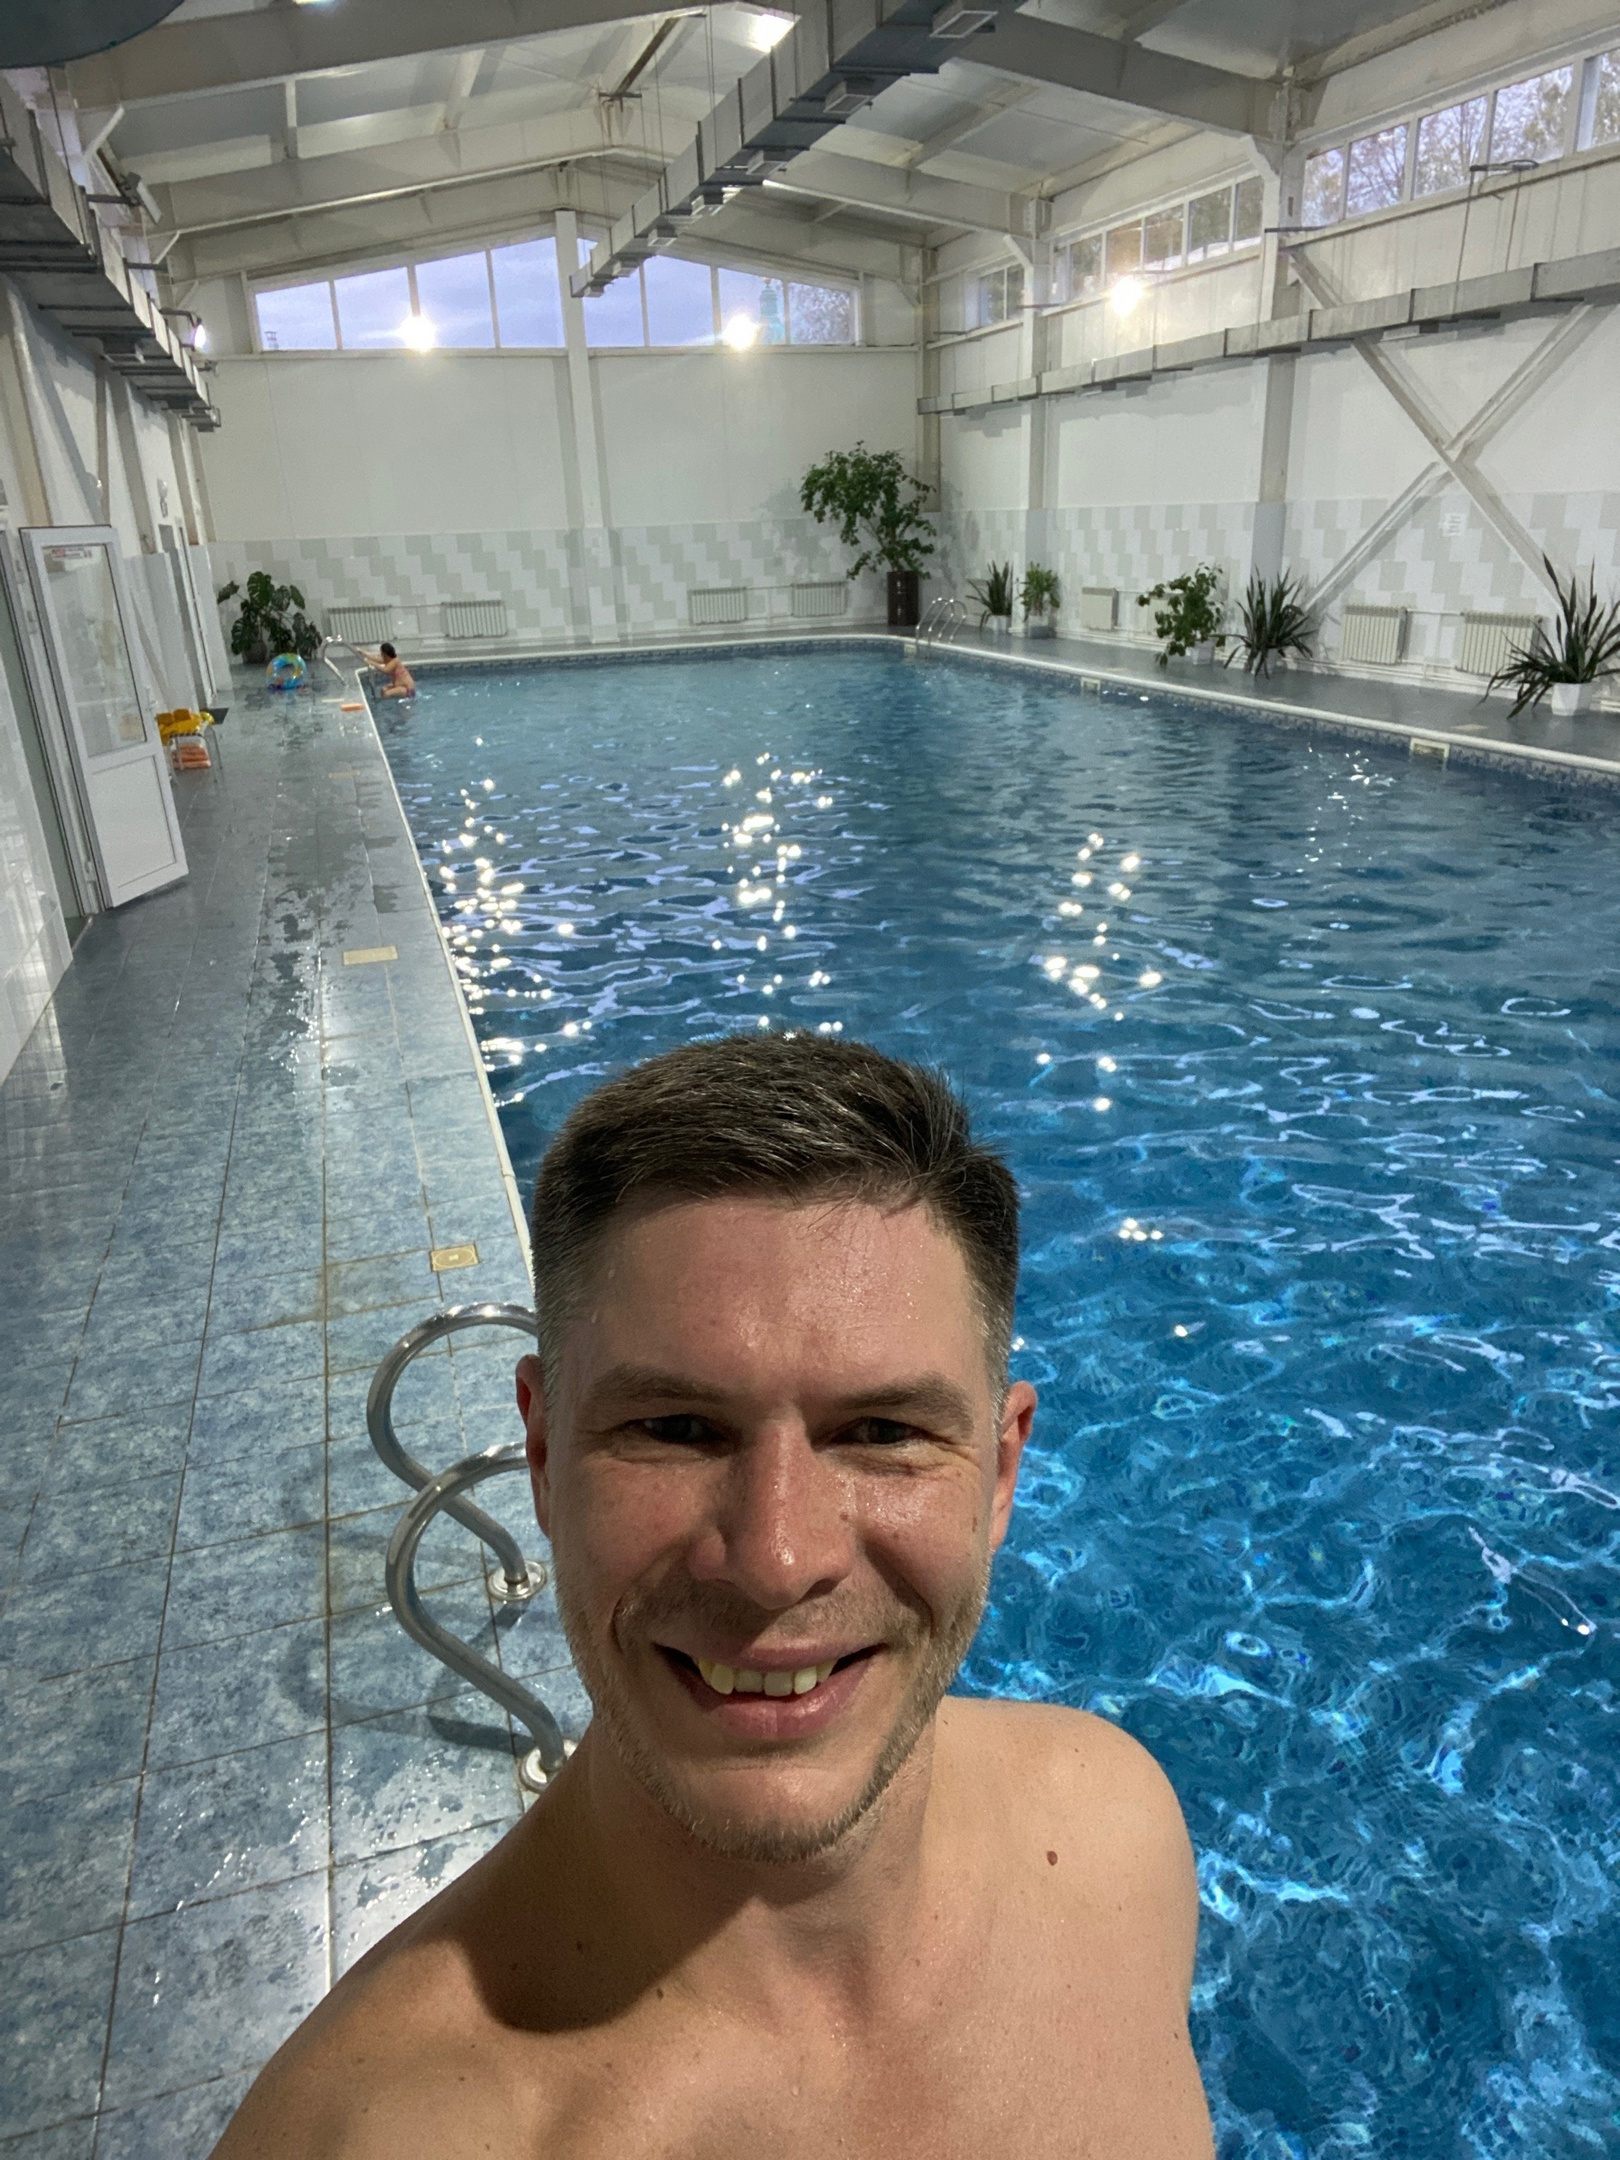 Создатель усадьбы Кирилл Лазаревых на фоне свежеоткрытого бассейна